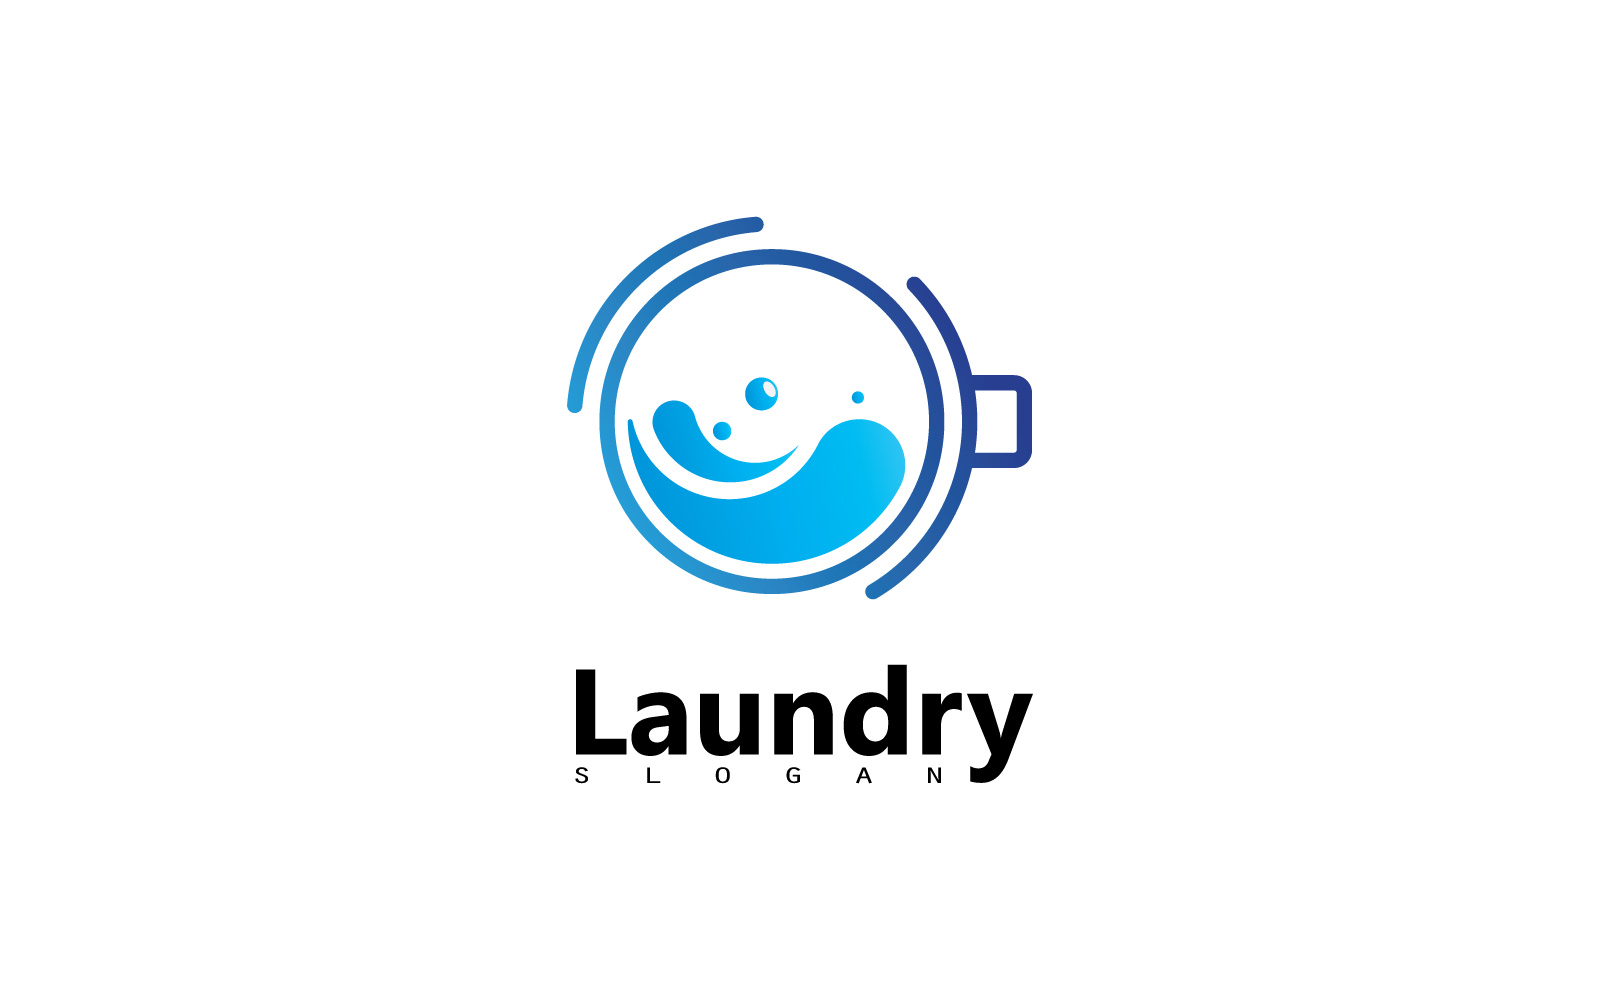 Washing machine laundry icon logo design V6